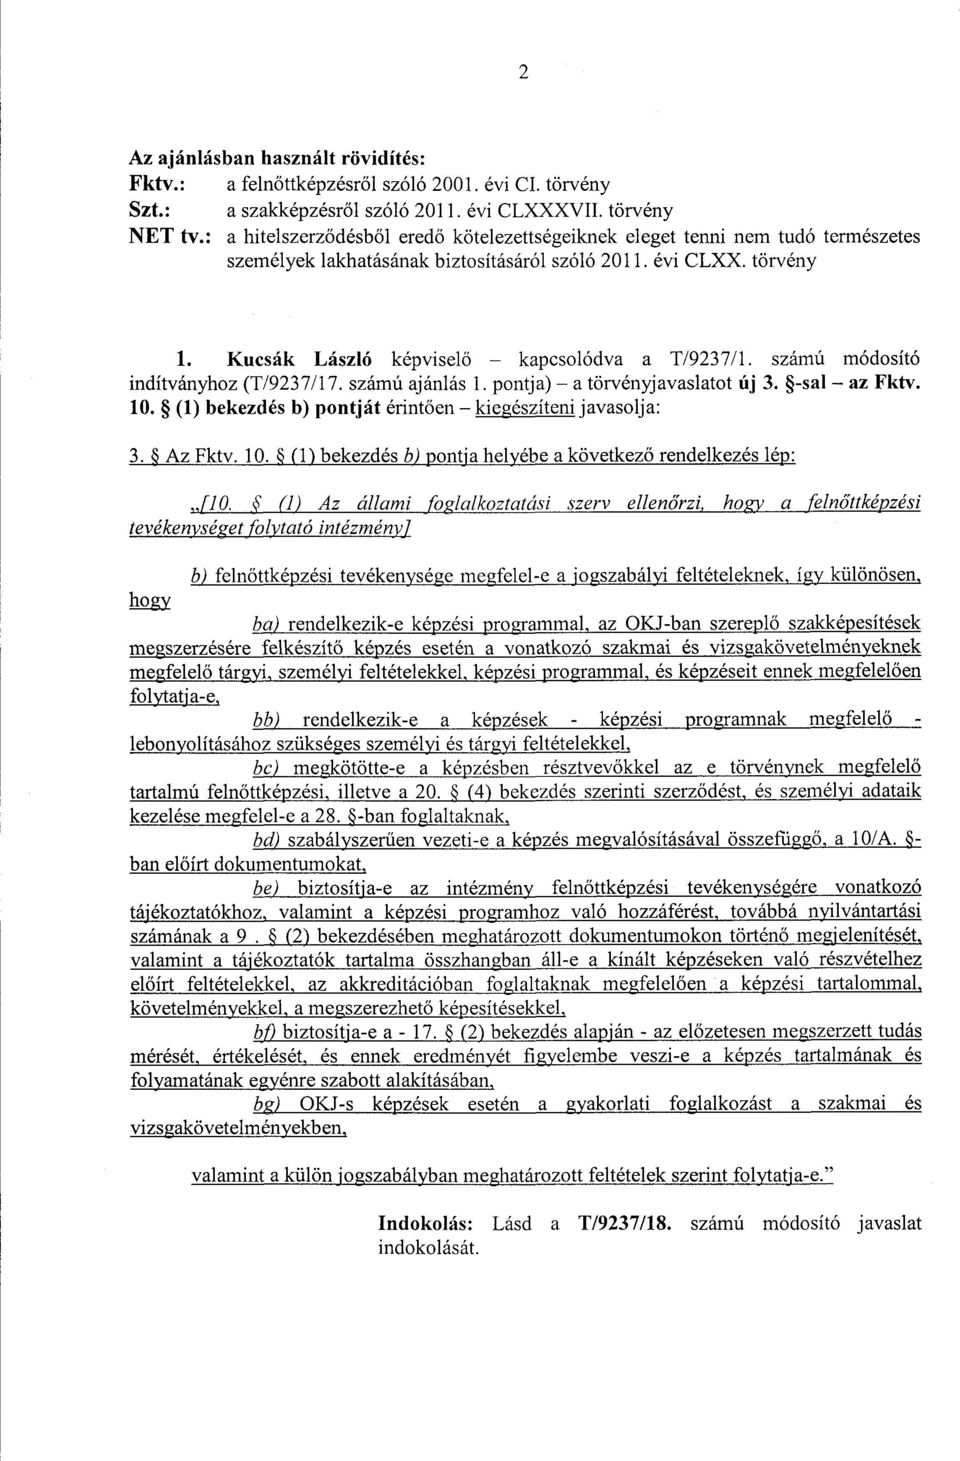 Kucsák László képvisel ő kapcsolódva a T/9237/1. számú módosító indítványhoz (T/9237/17. számú ajánlás 1. pontja) a törvényjavaslatot új 3. -sal az Fktv. 10.